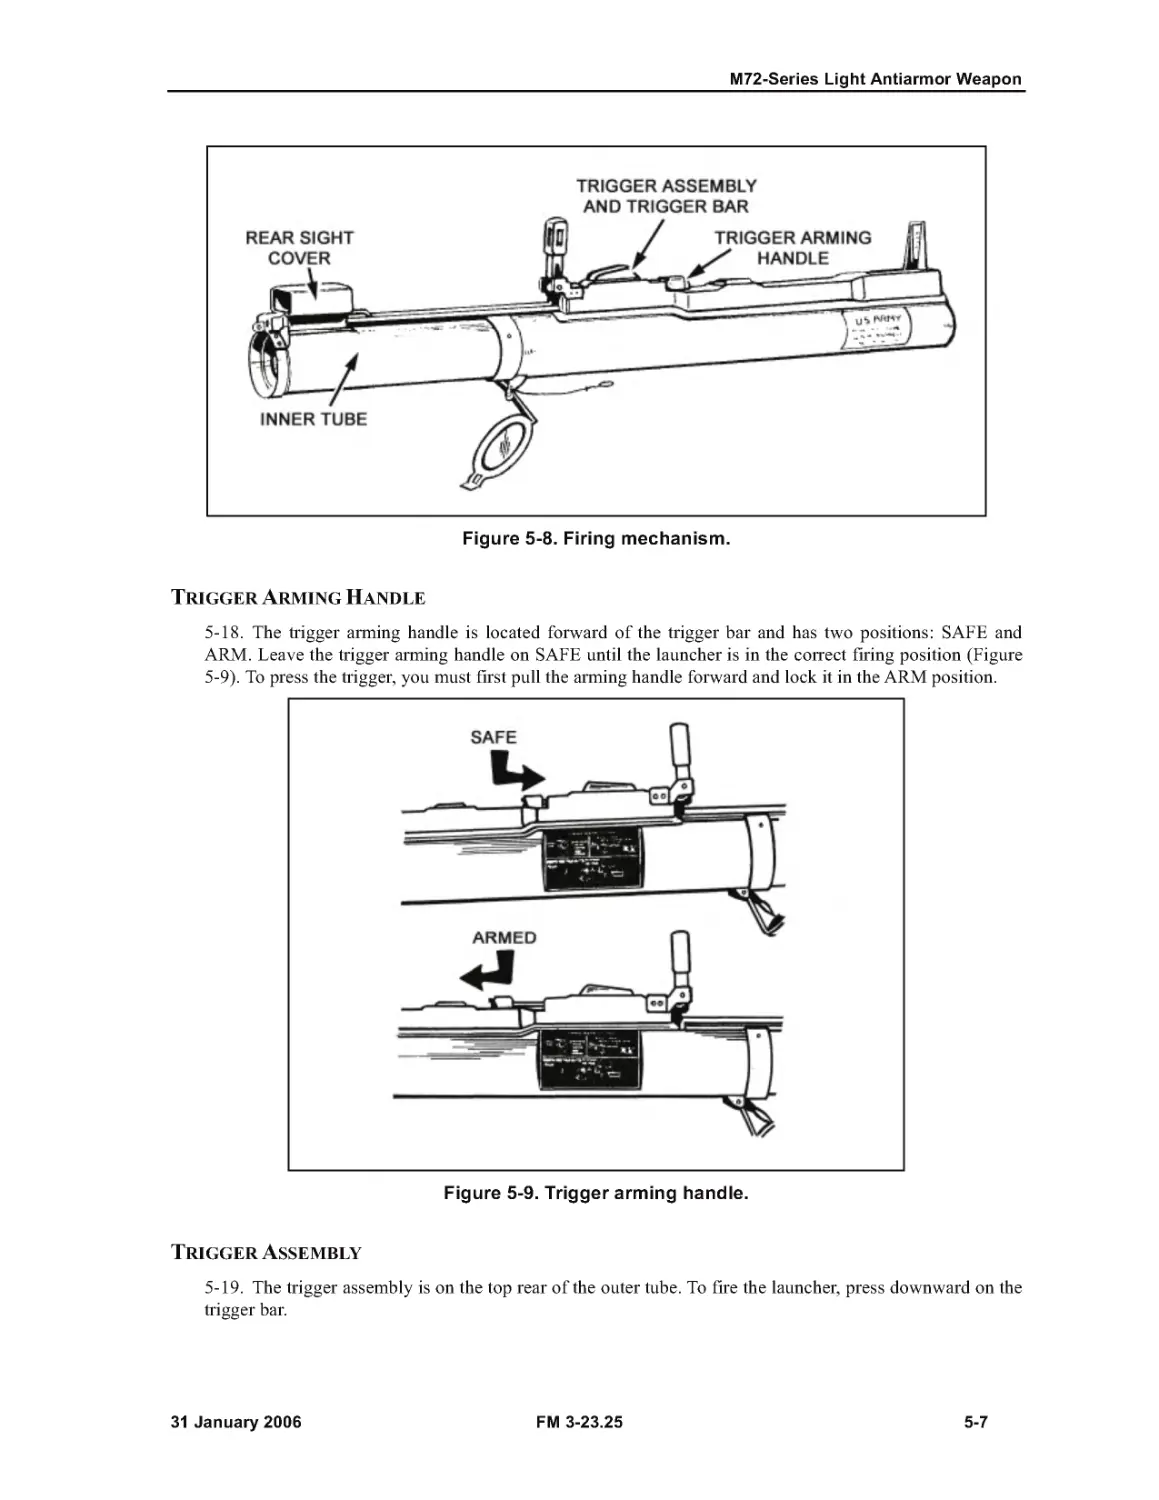 Figure 5-8. Firing mechanism.
Figure 5-9. Trigger arming handle.